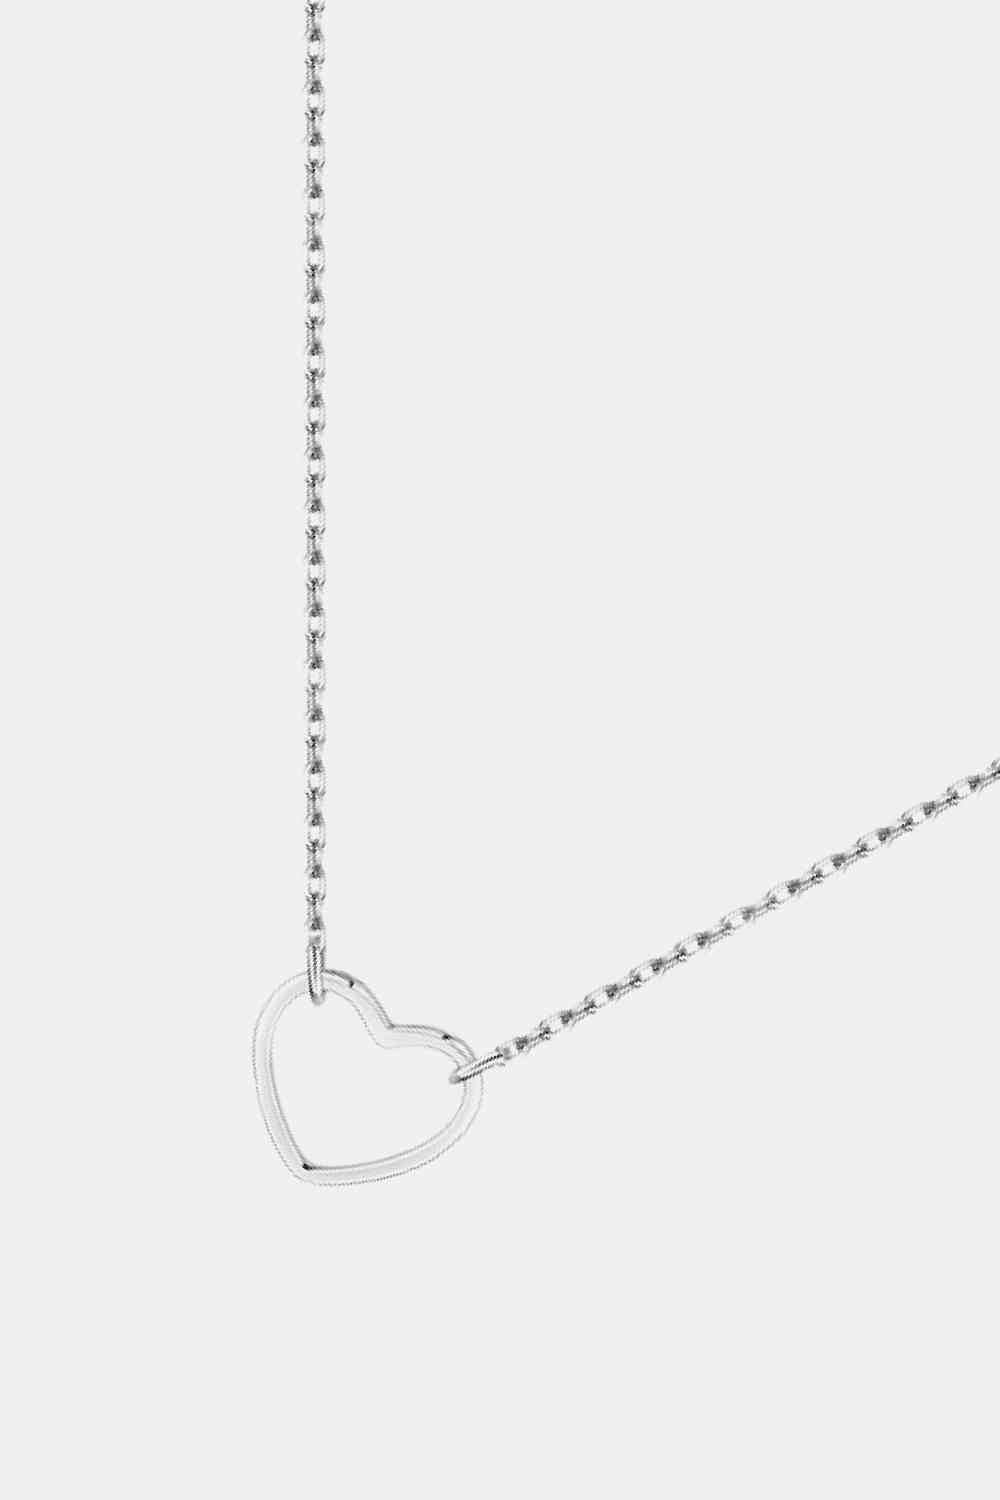 925 Sterling Silver Heart Shape Pendant Necklace - Global Village Kailua Boutique